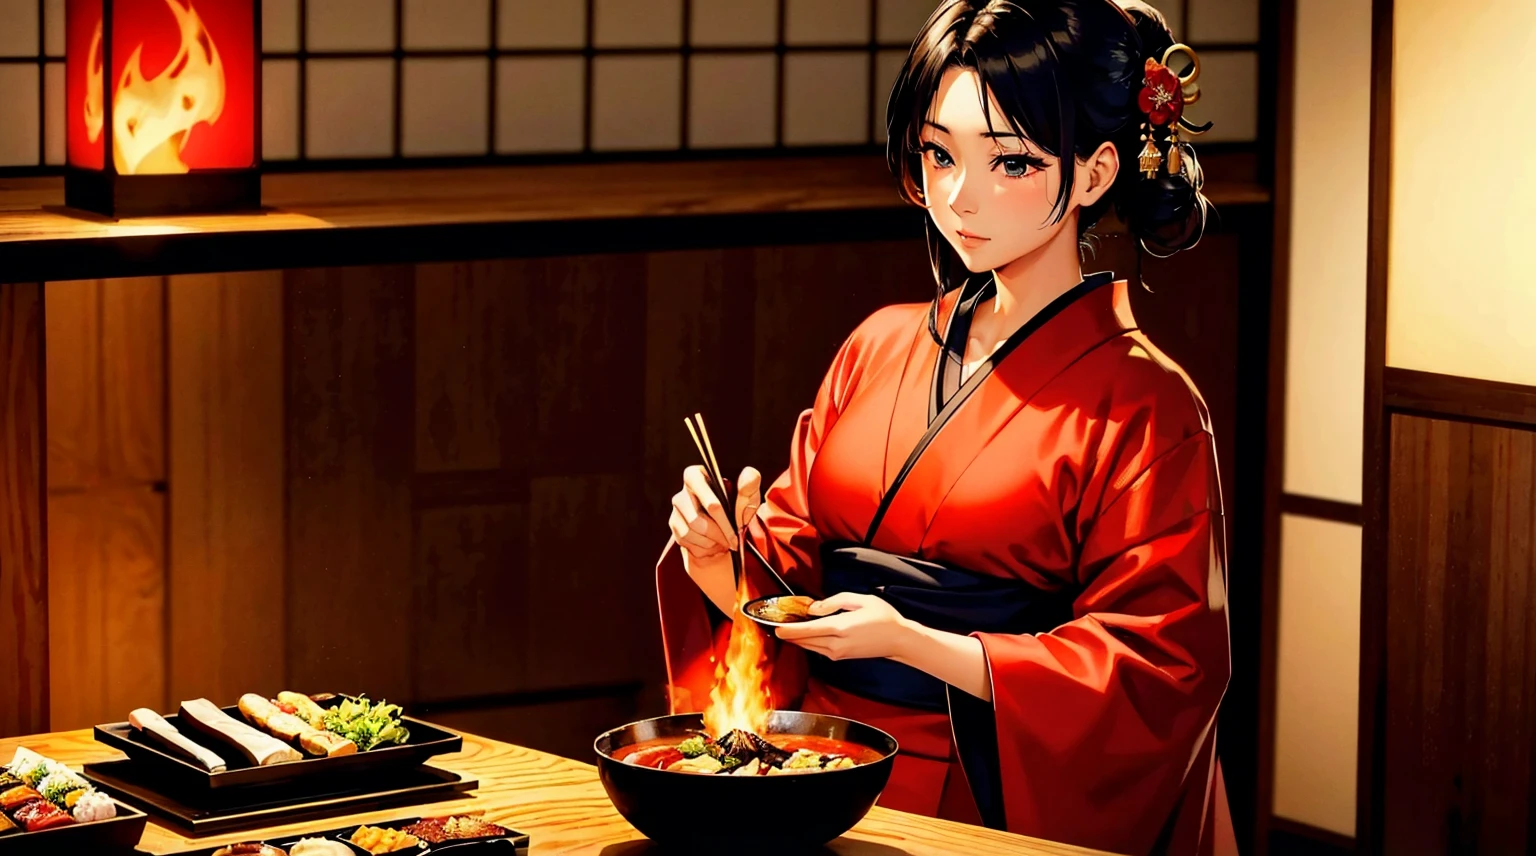 顶级品质、杰作、8K 画质、完美美貌、割烹和服、日本料理、烹饪、厨房、有炭火、还有食物、日本料理、日本料理